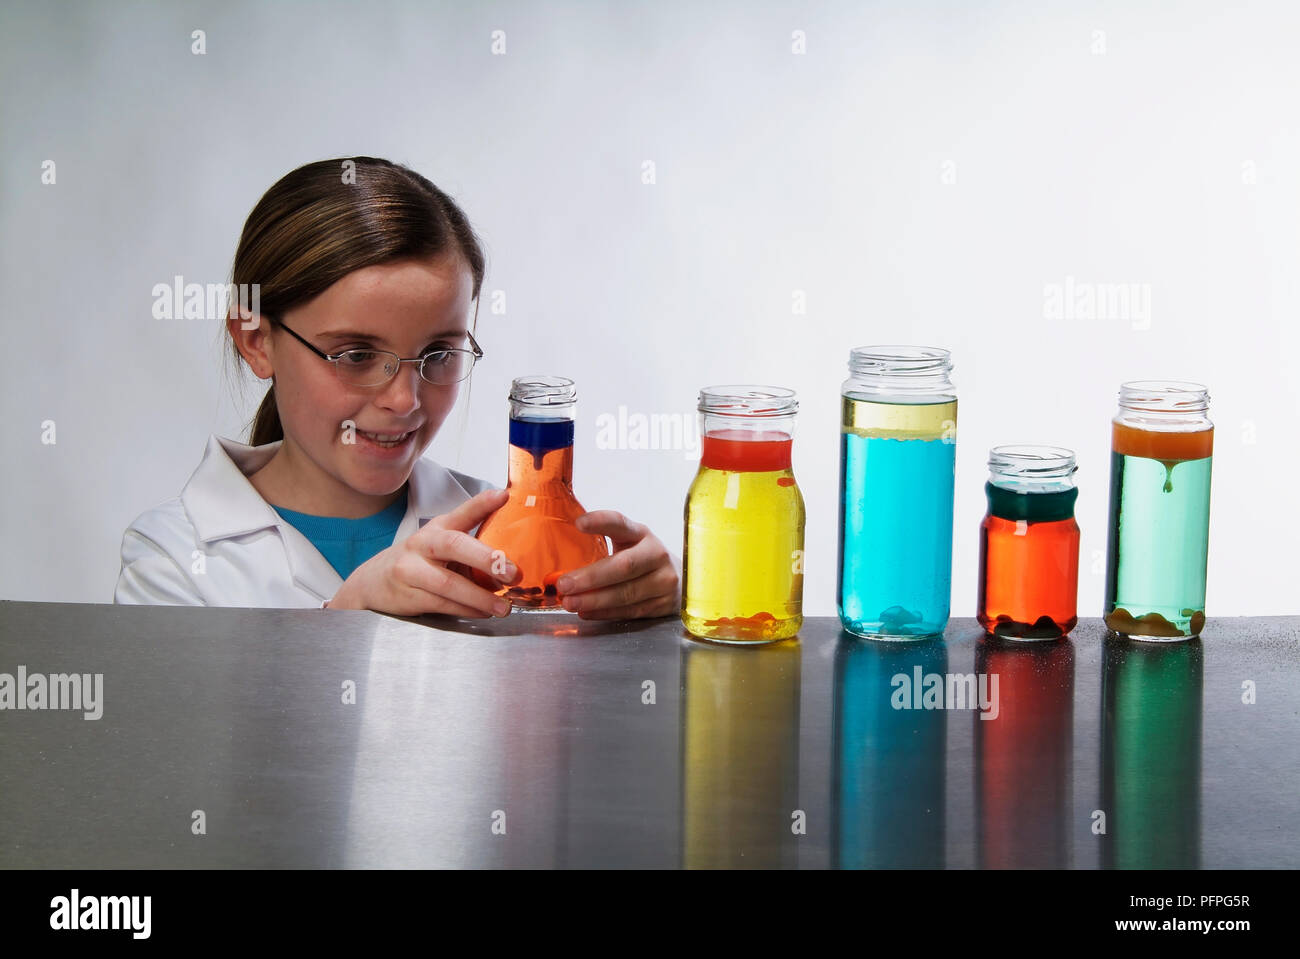 Pré-adolescente in lab coat, souriant, l'examen de l'un des cinq petites bouteilles contenant des liquides colorés sur la table Banque D'Images